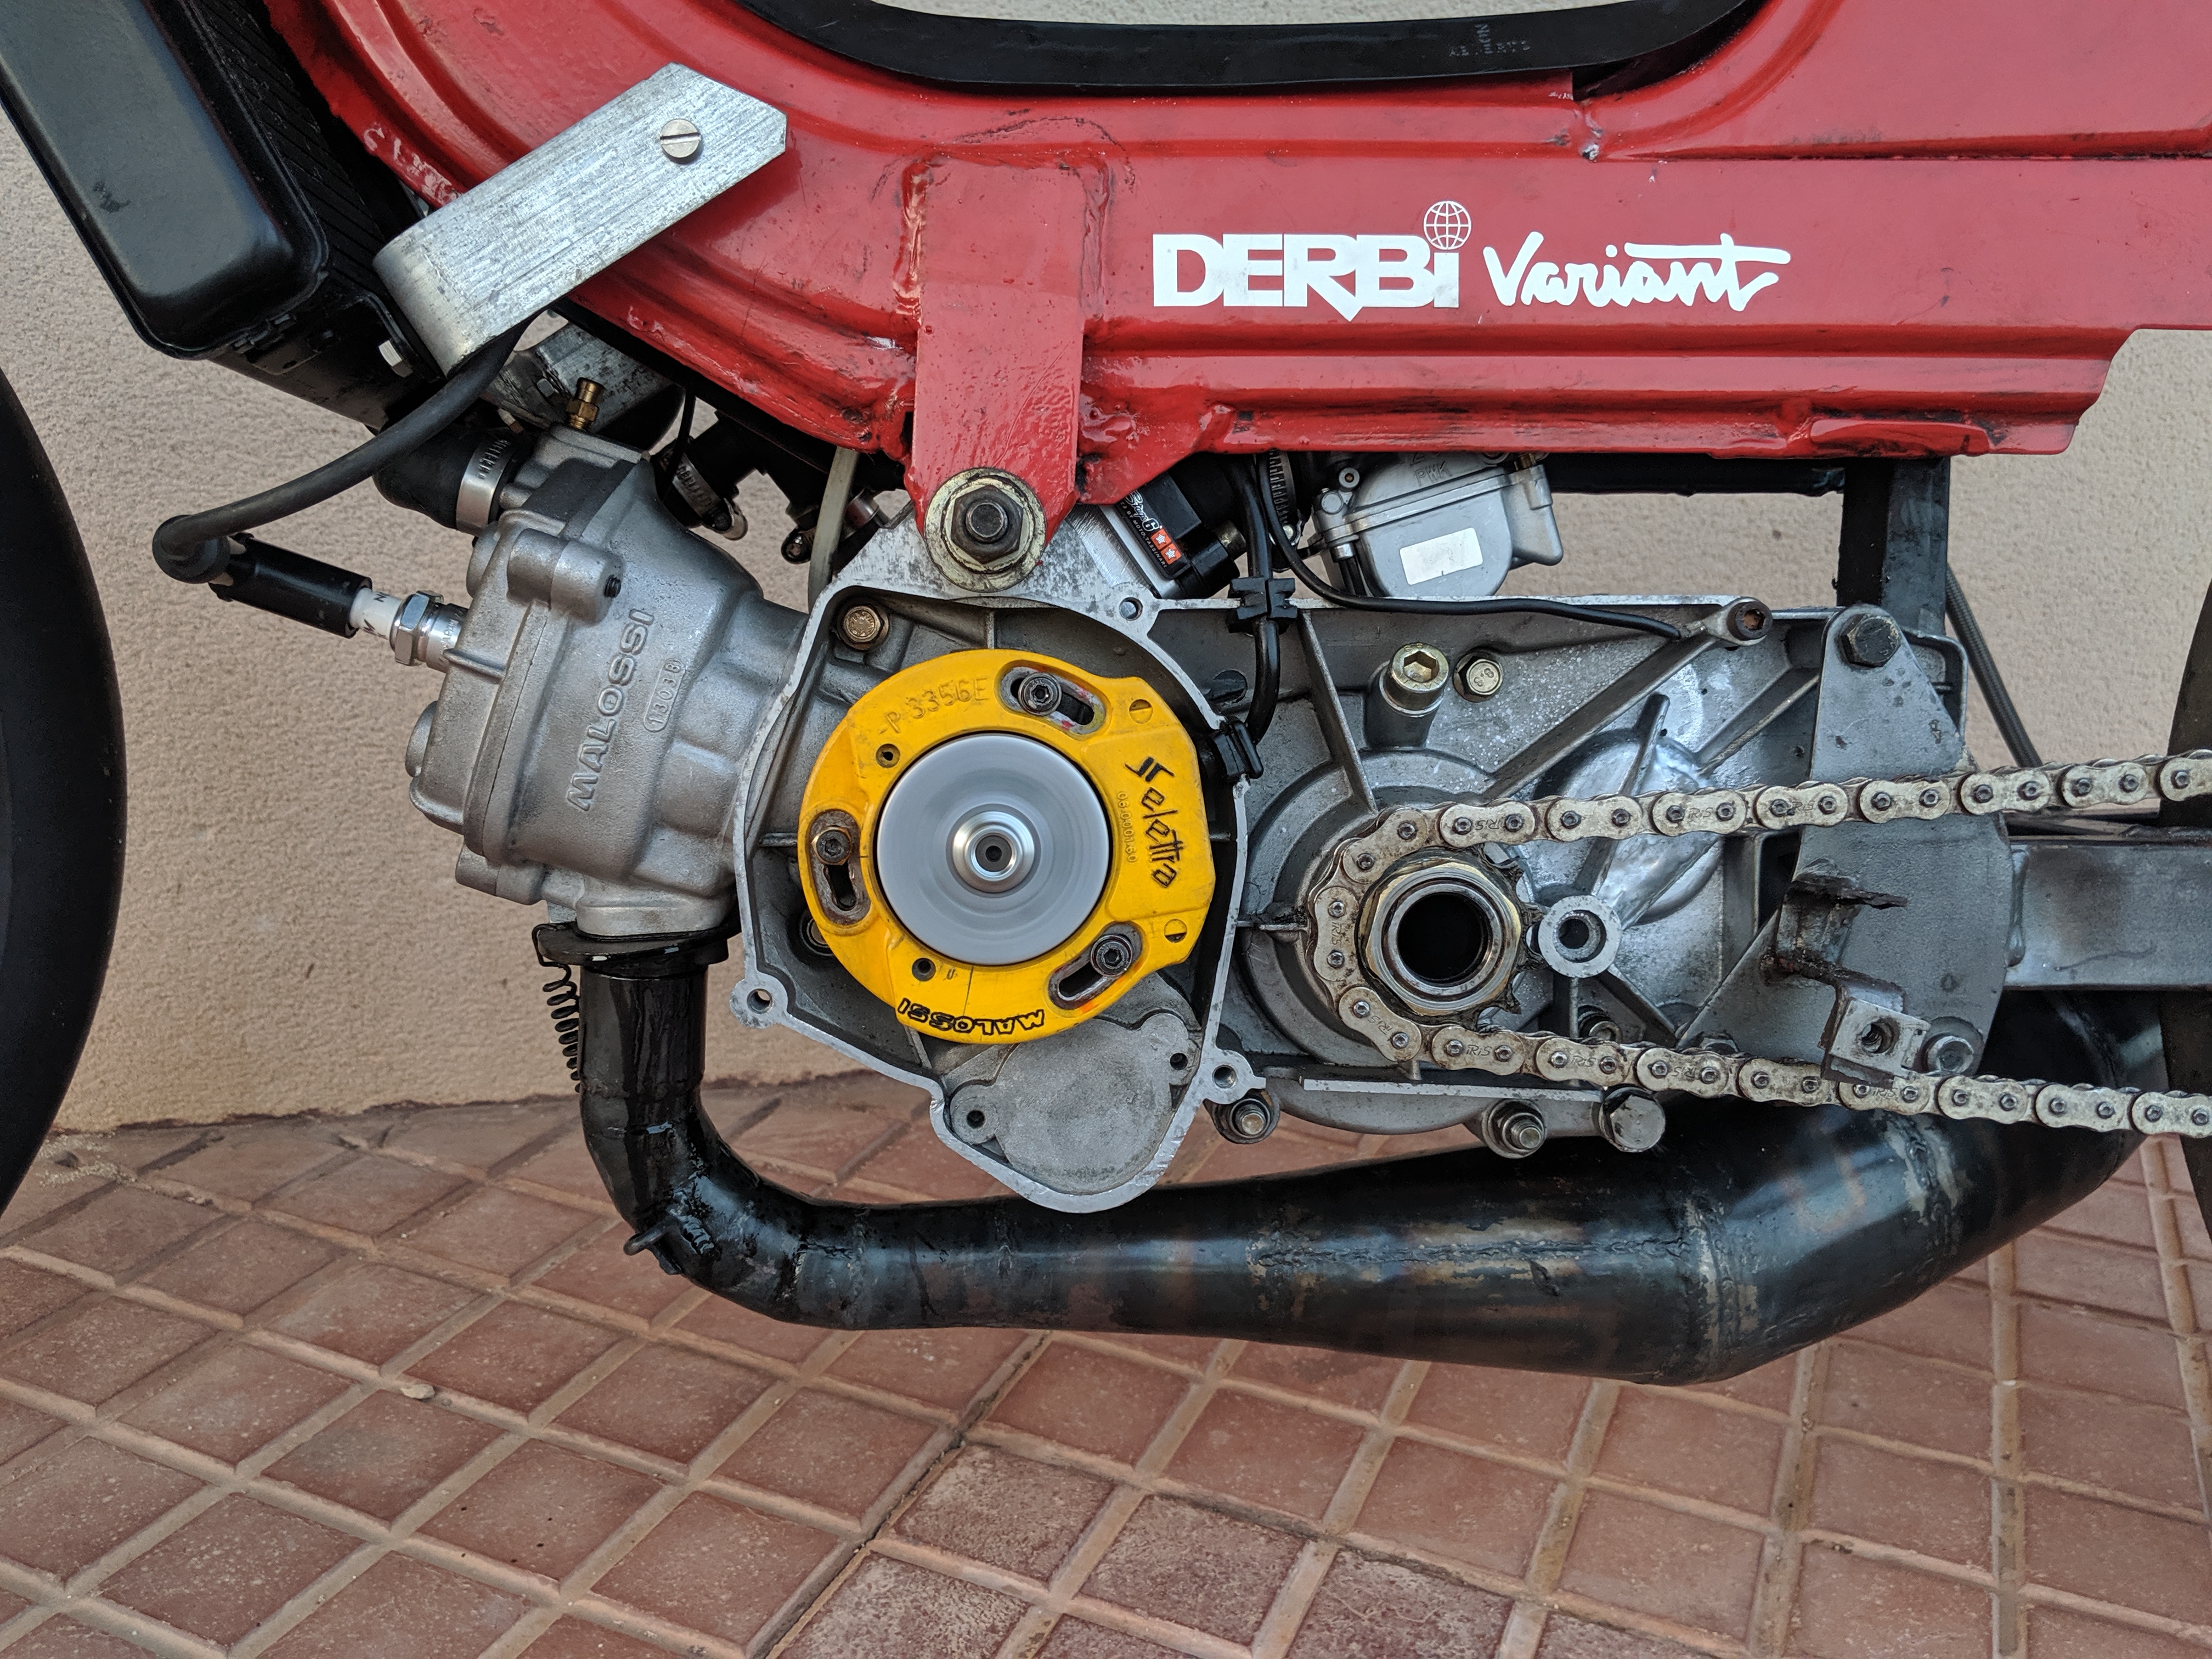 Preparación Derbi Variant con motor Start 3! – Blog de Motoscoot